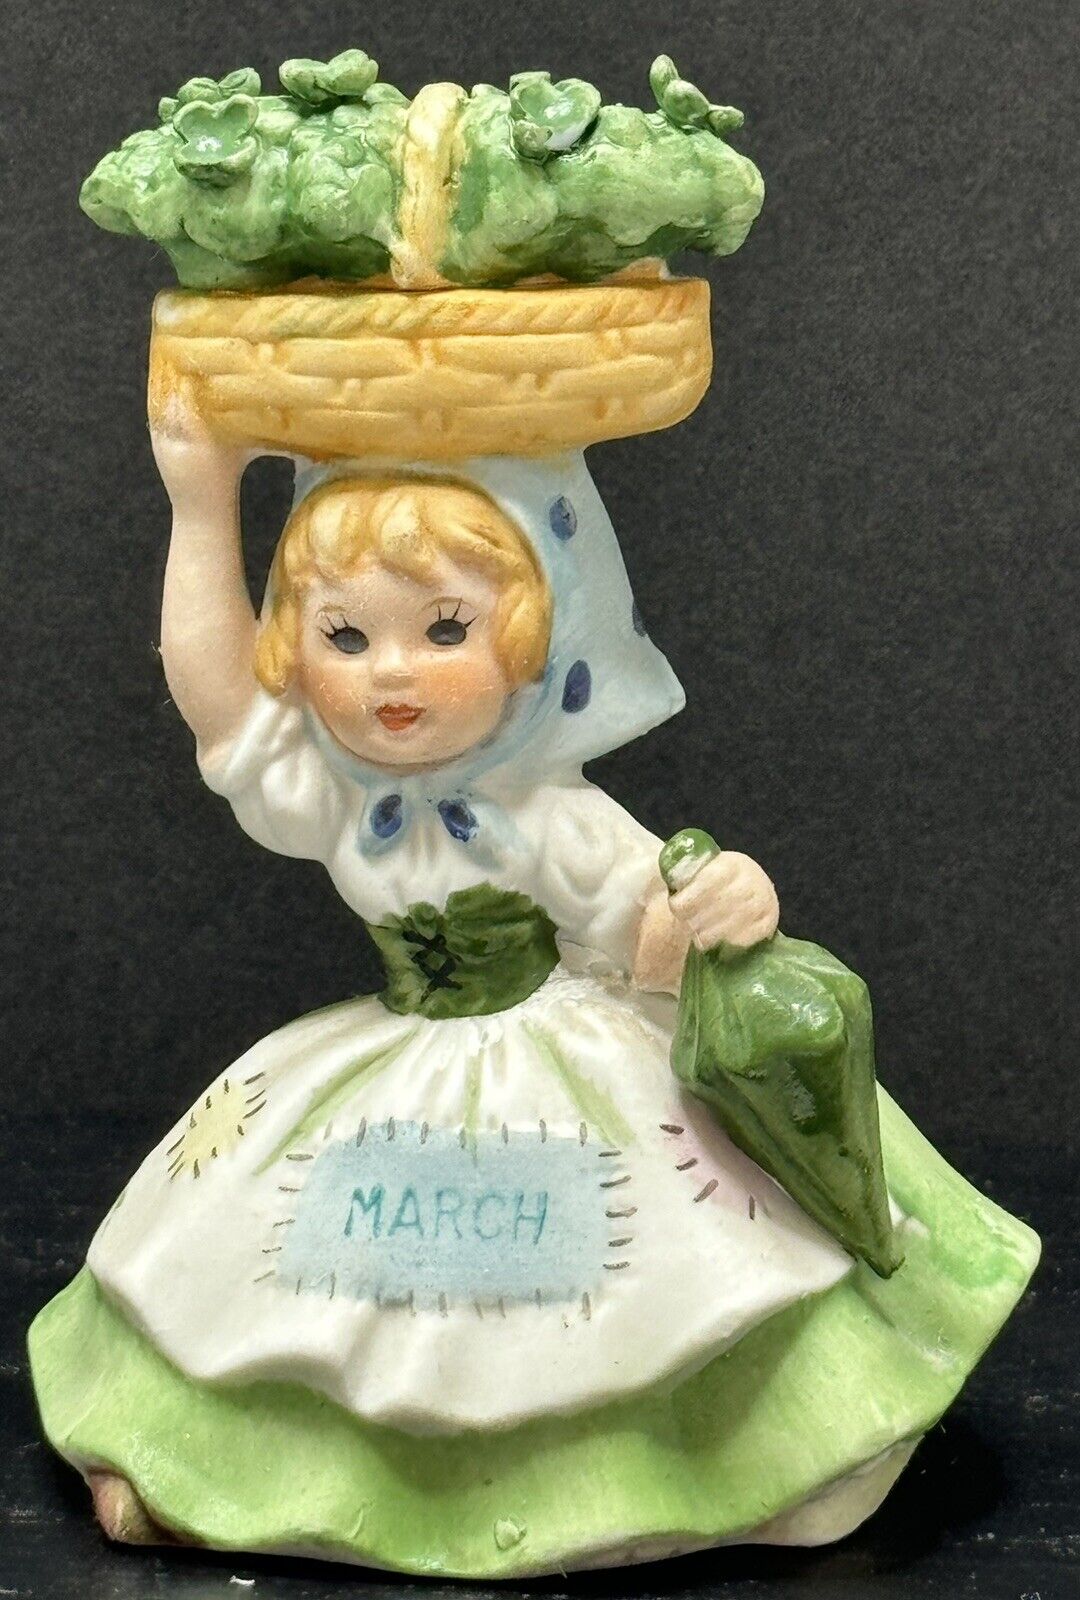 VTG LEFTON Porcelain Bisque March Figurine Girl w/Basket of 4 Leaf Clovers #6228